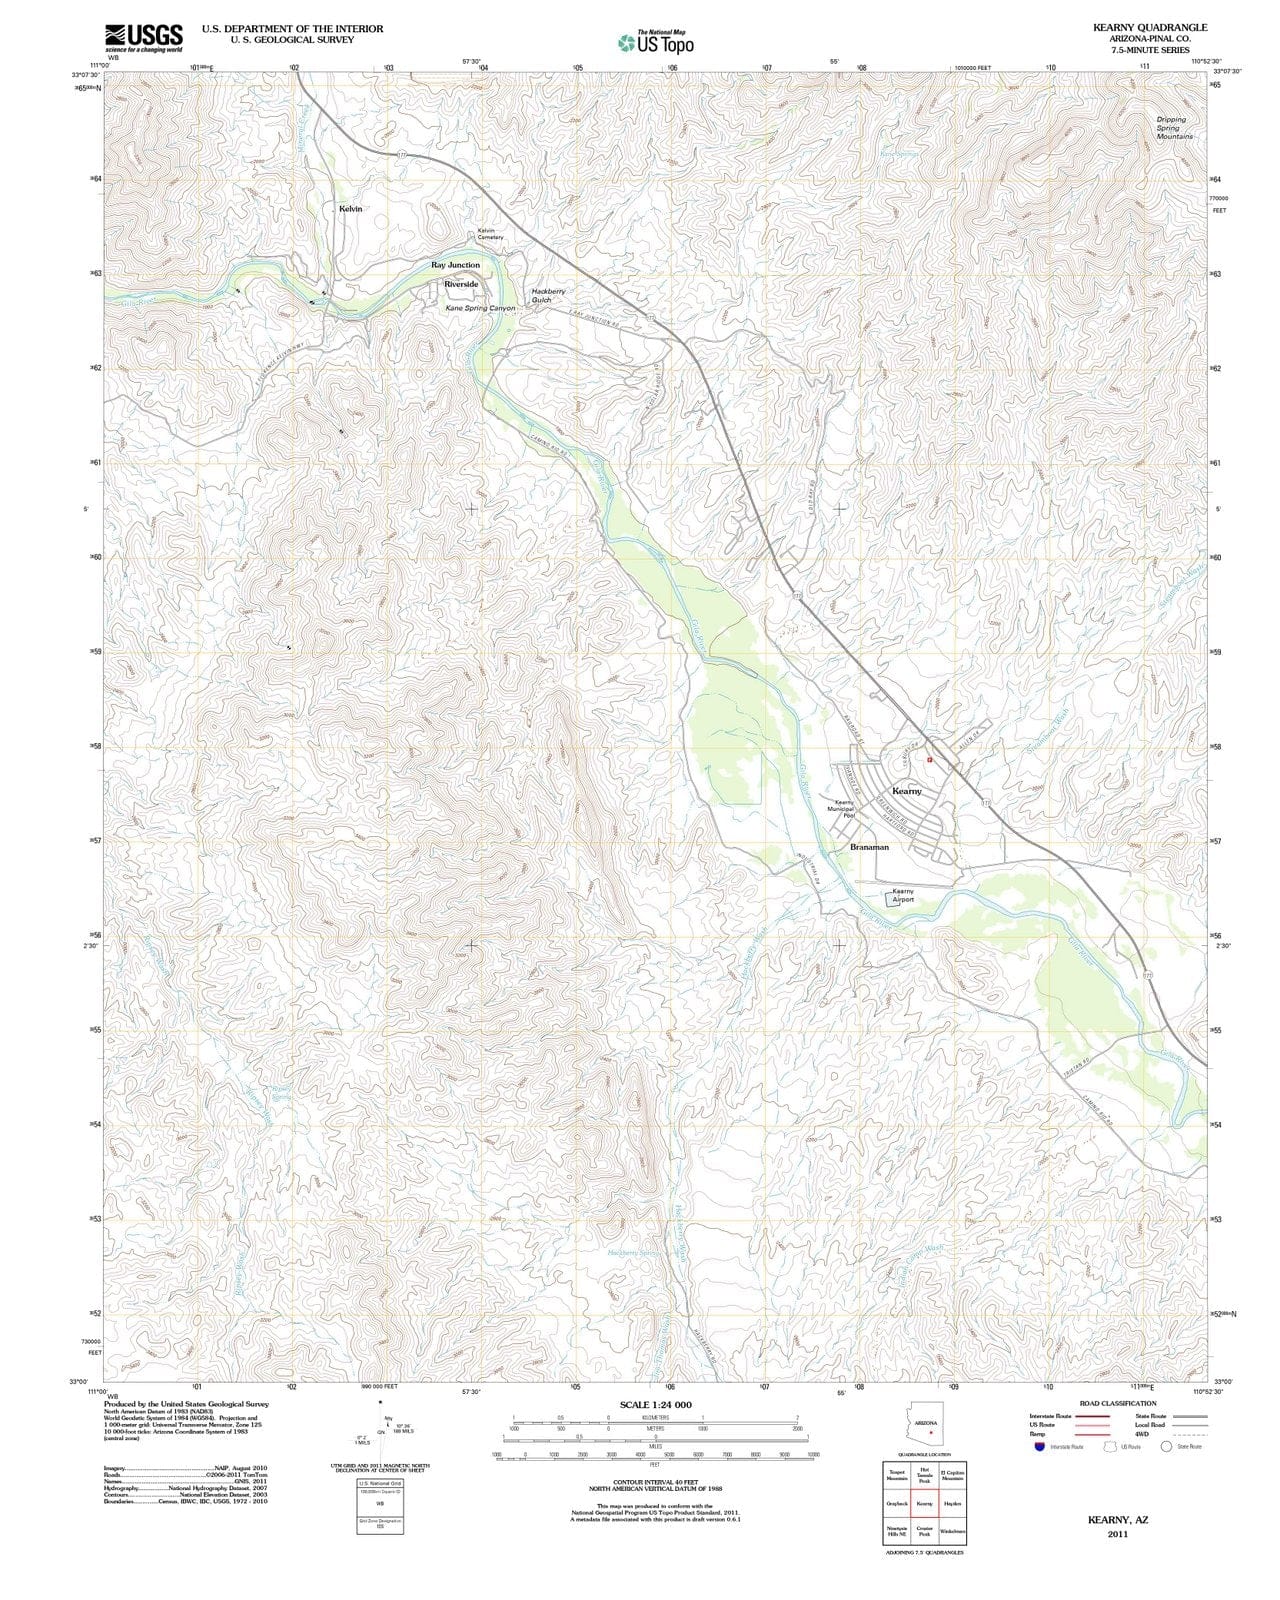 2011 Kearny, AZ - Arizona - USGS Topographic Map